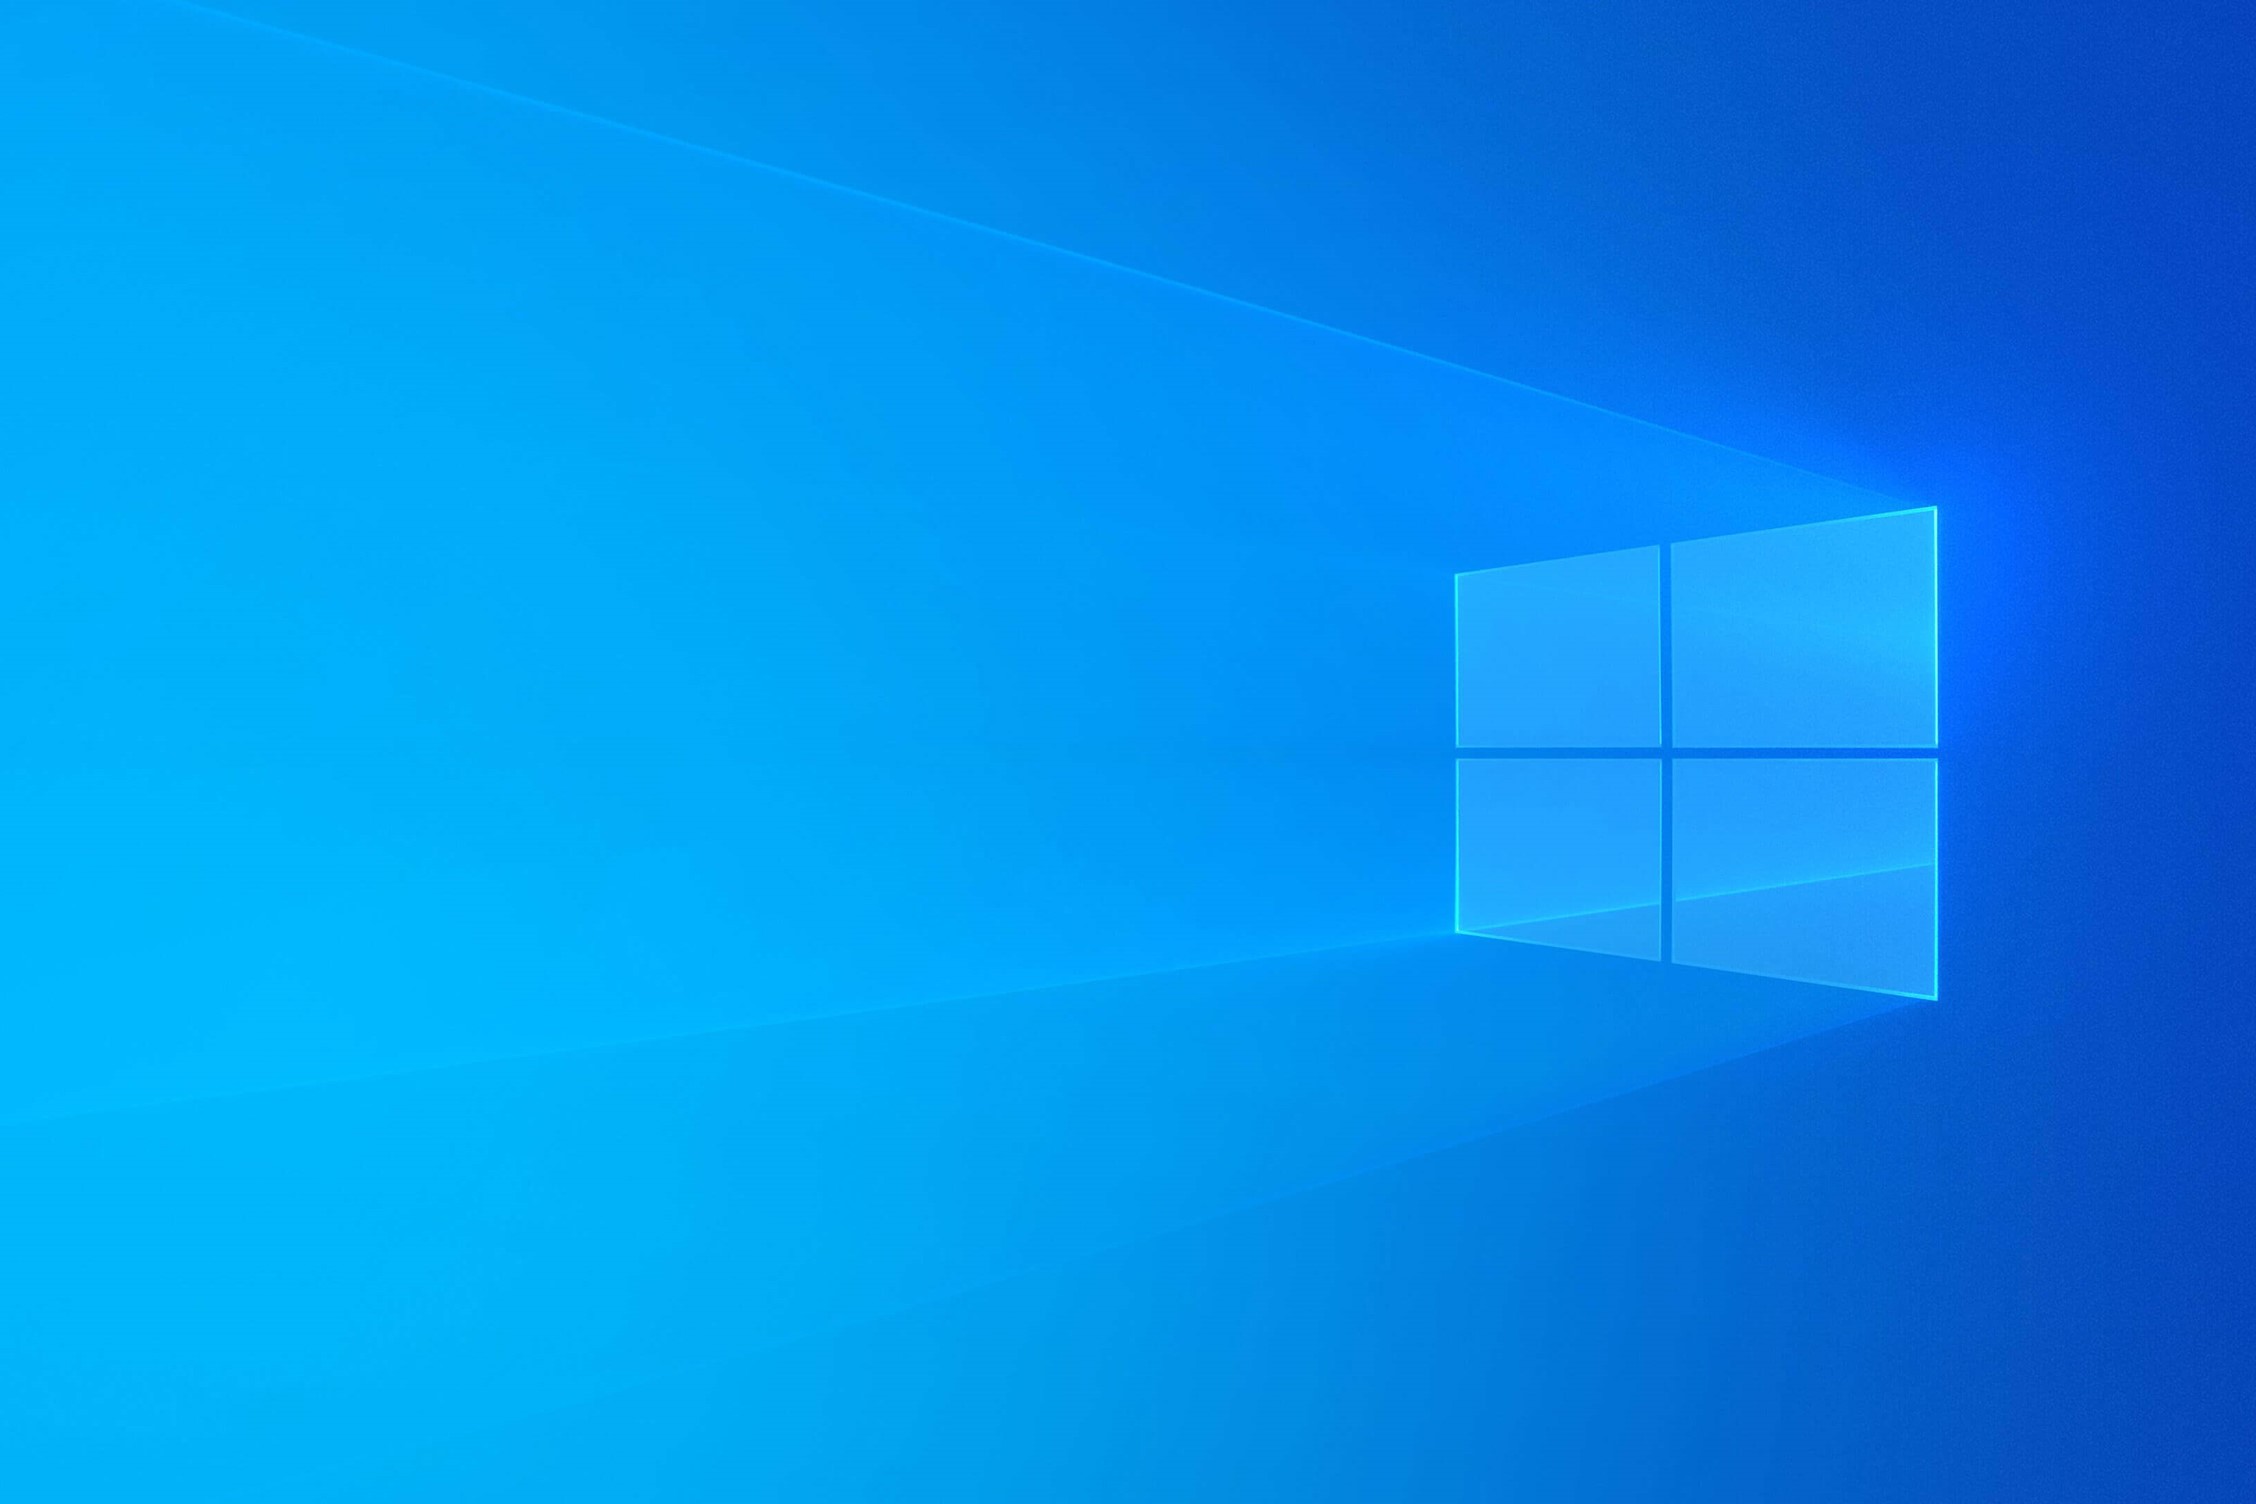 Windows Light - Ảnh nền. Nếu bạn đang cần một bố cục trang trí màn hình máy tính thật độc đáo và hiện đại, hãy thử sử dụng bộ sưu tập hình nền Windows Light. Được thiết kế đặc biệt cho phiên bản Windows Light, các hình nền này sẽ mang đến cho bạn sự mới mẻ và độc đáo.